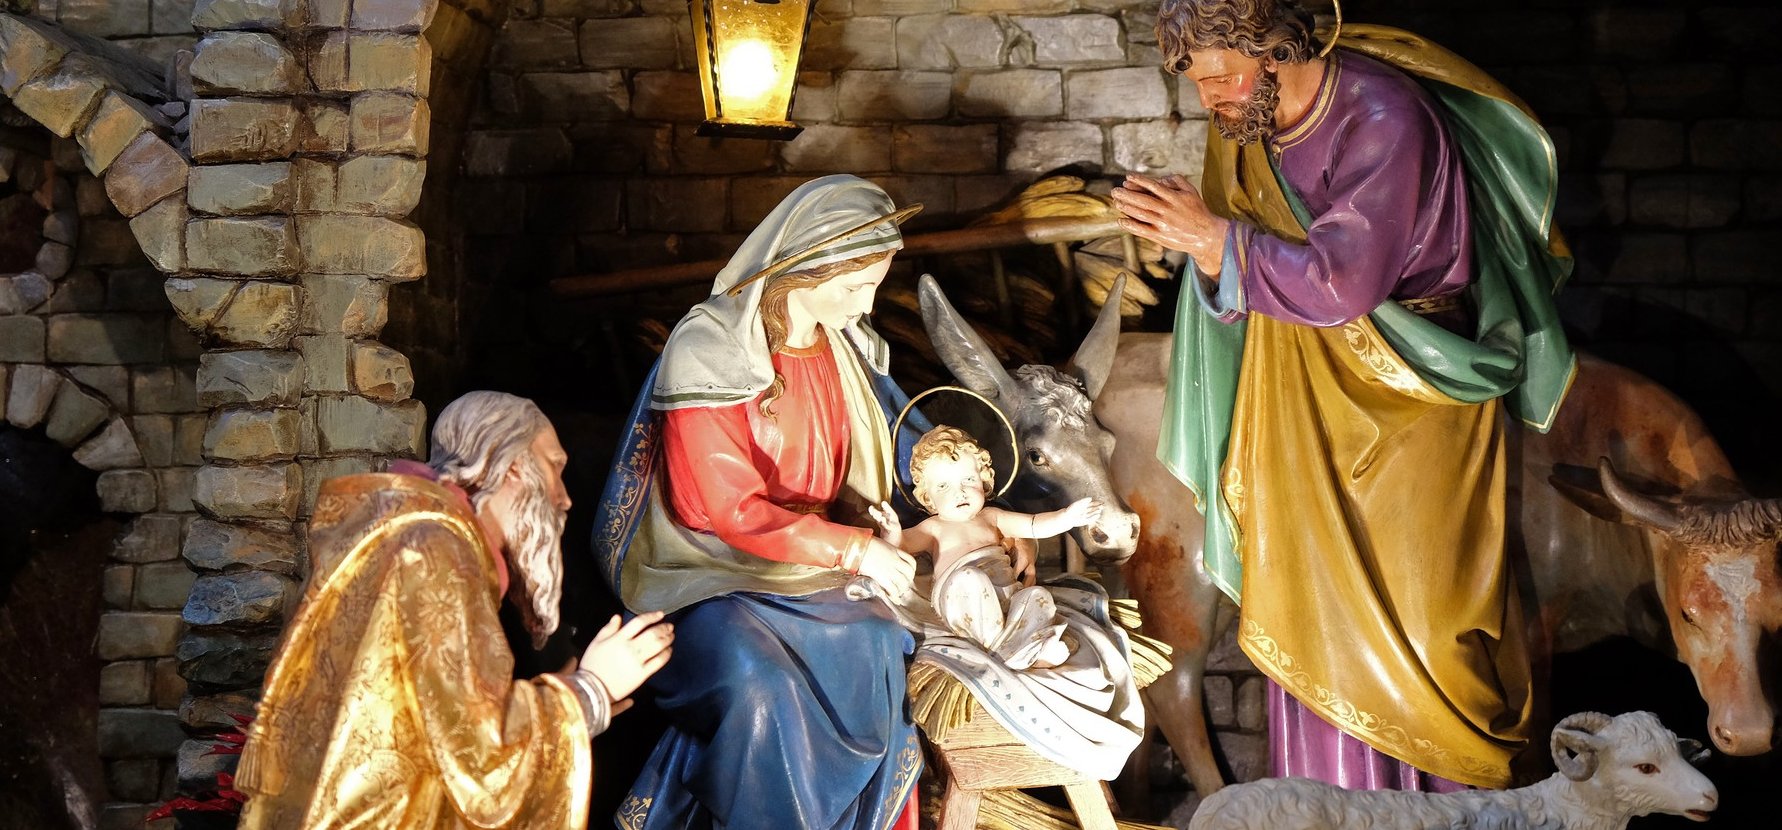 Öt izgalmas titok lappang Jézus születése körül – a Biblia nem is említi őket